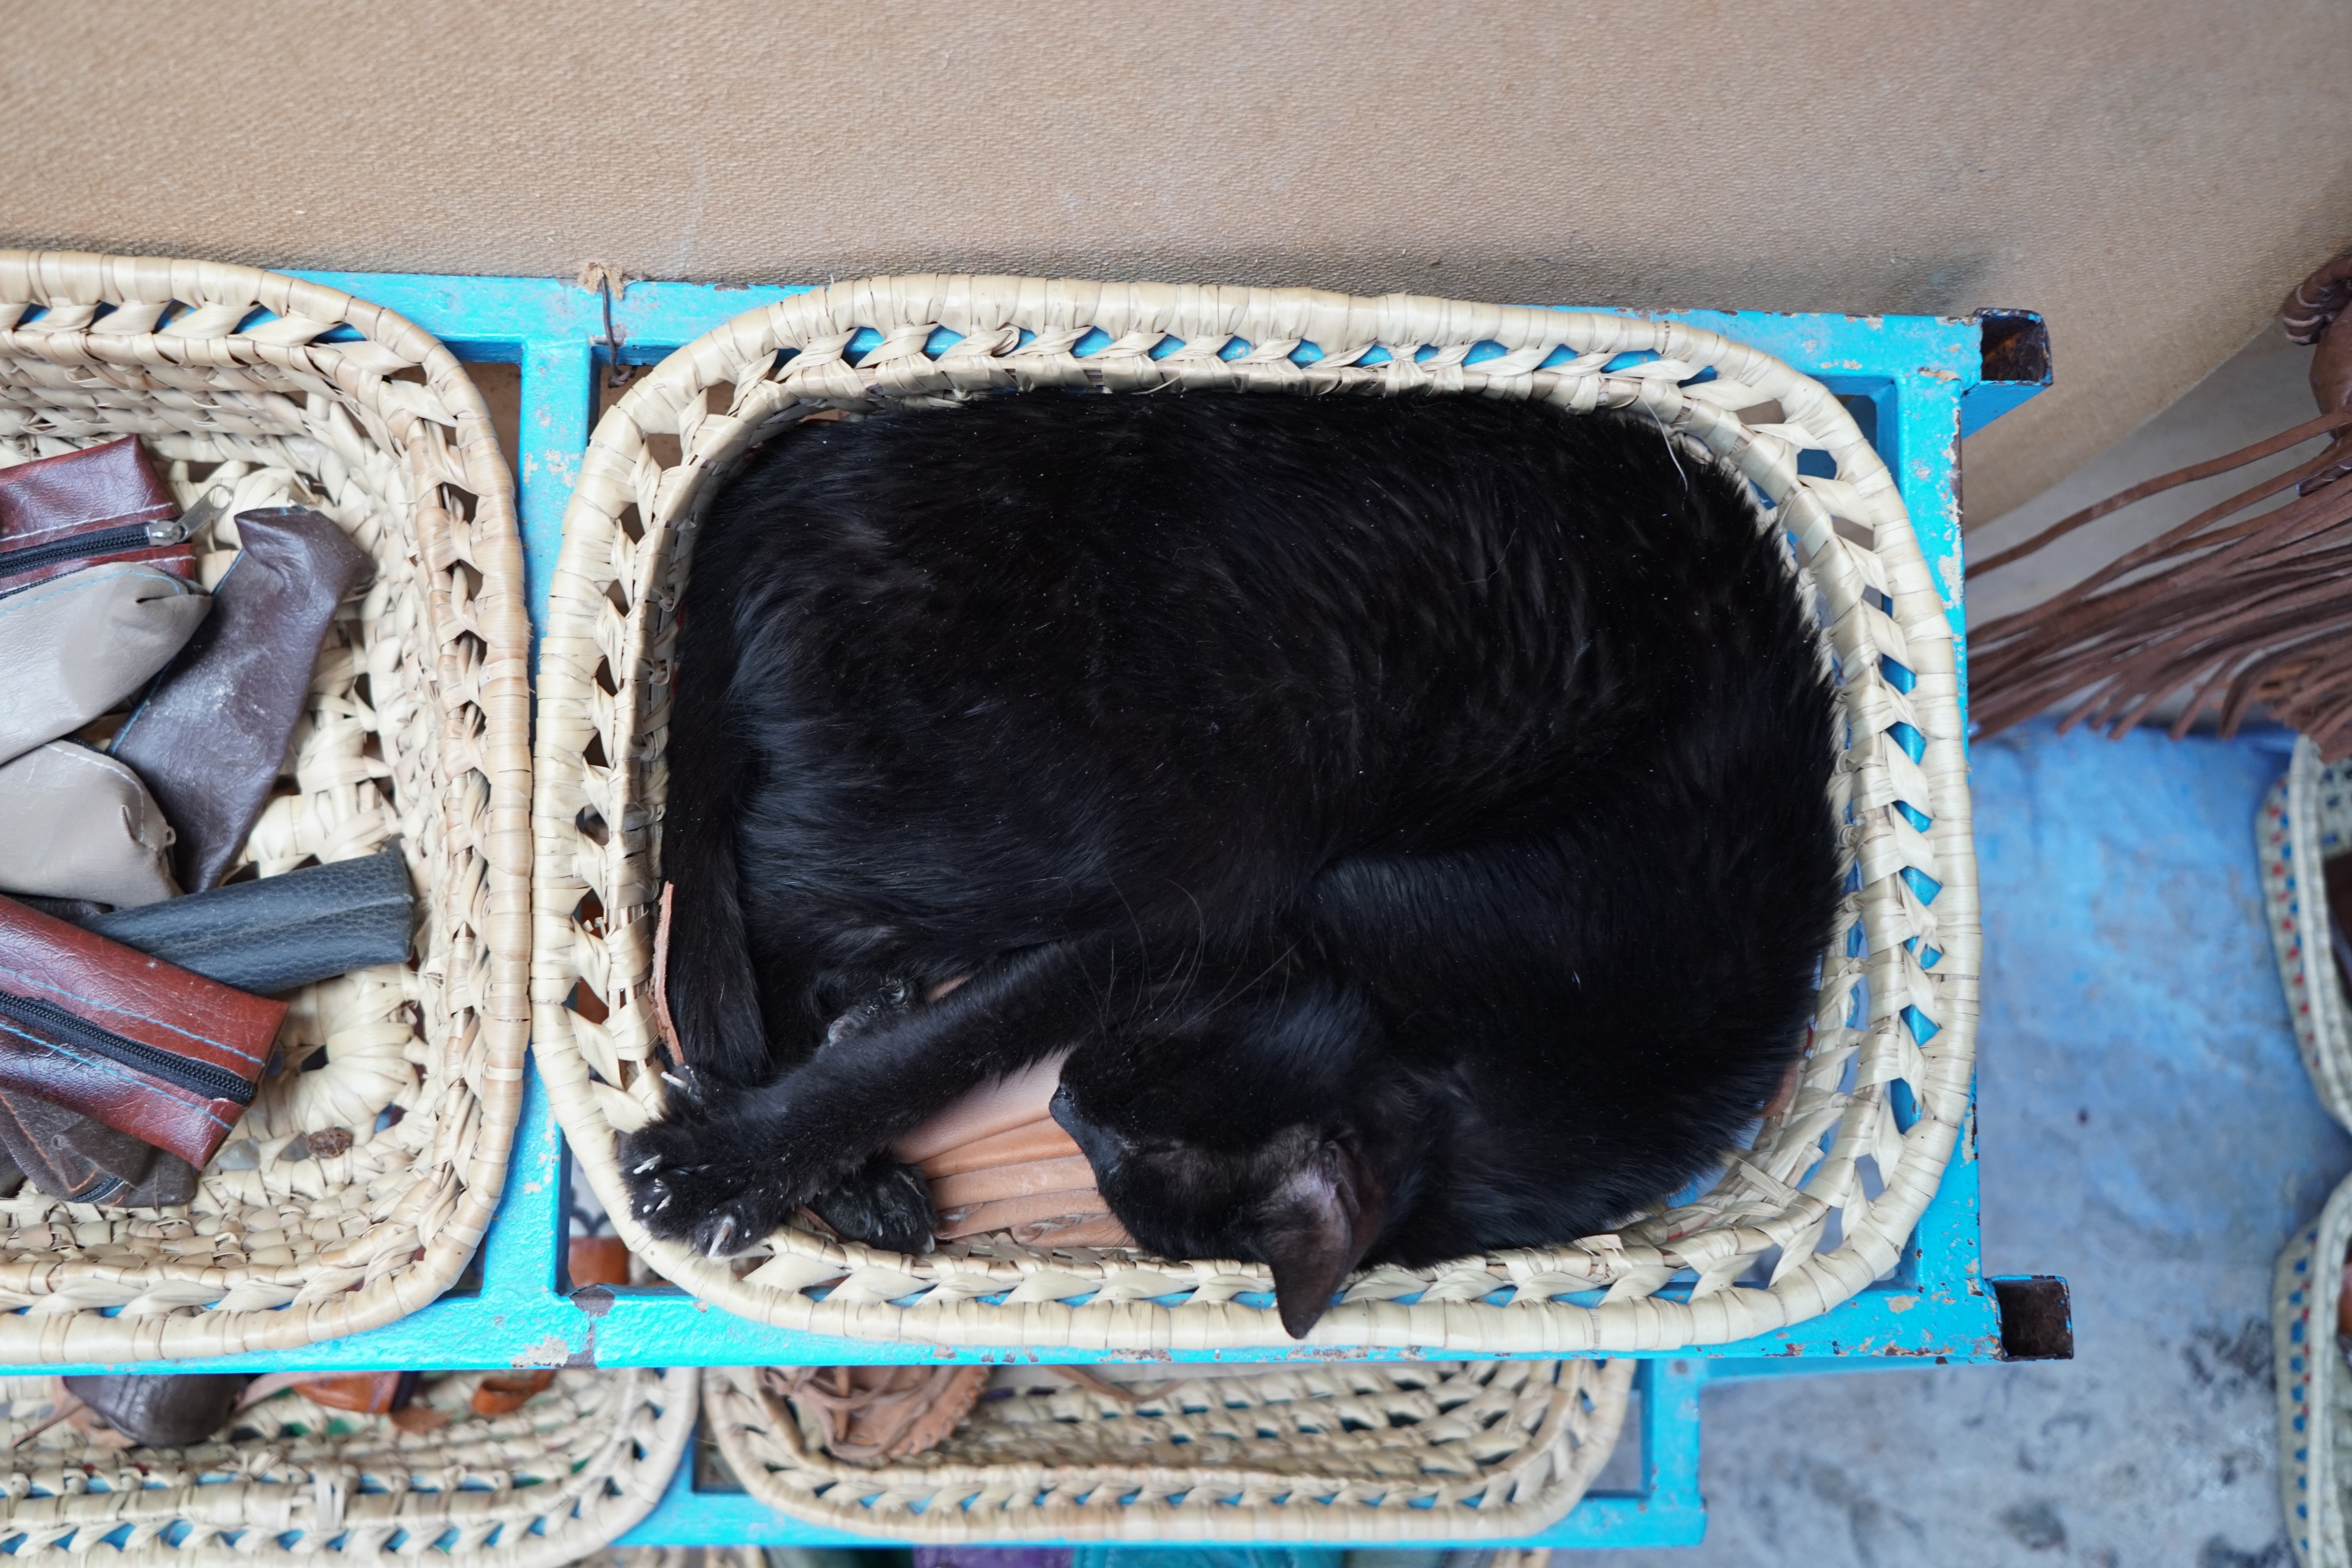 A cat in a basket photo